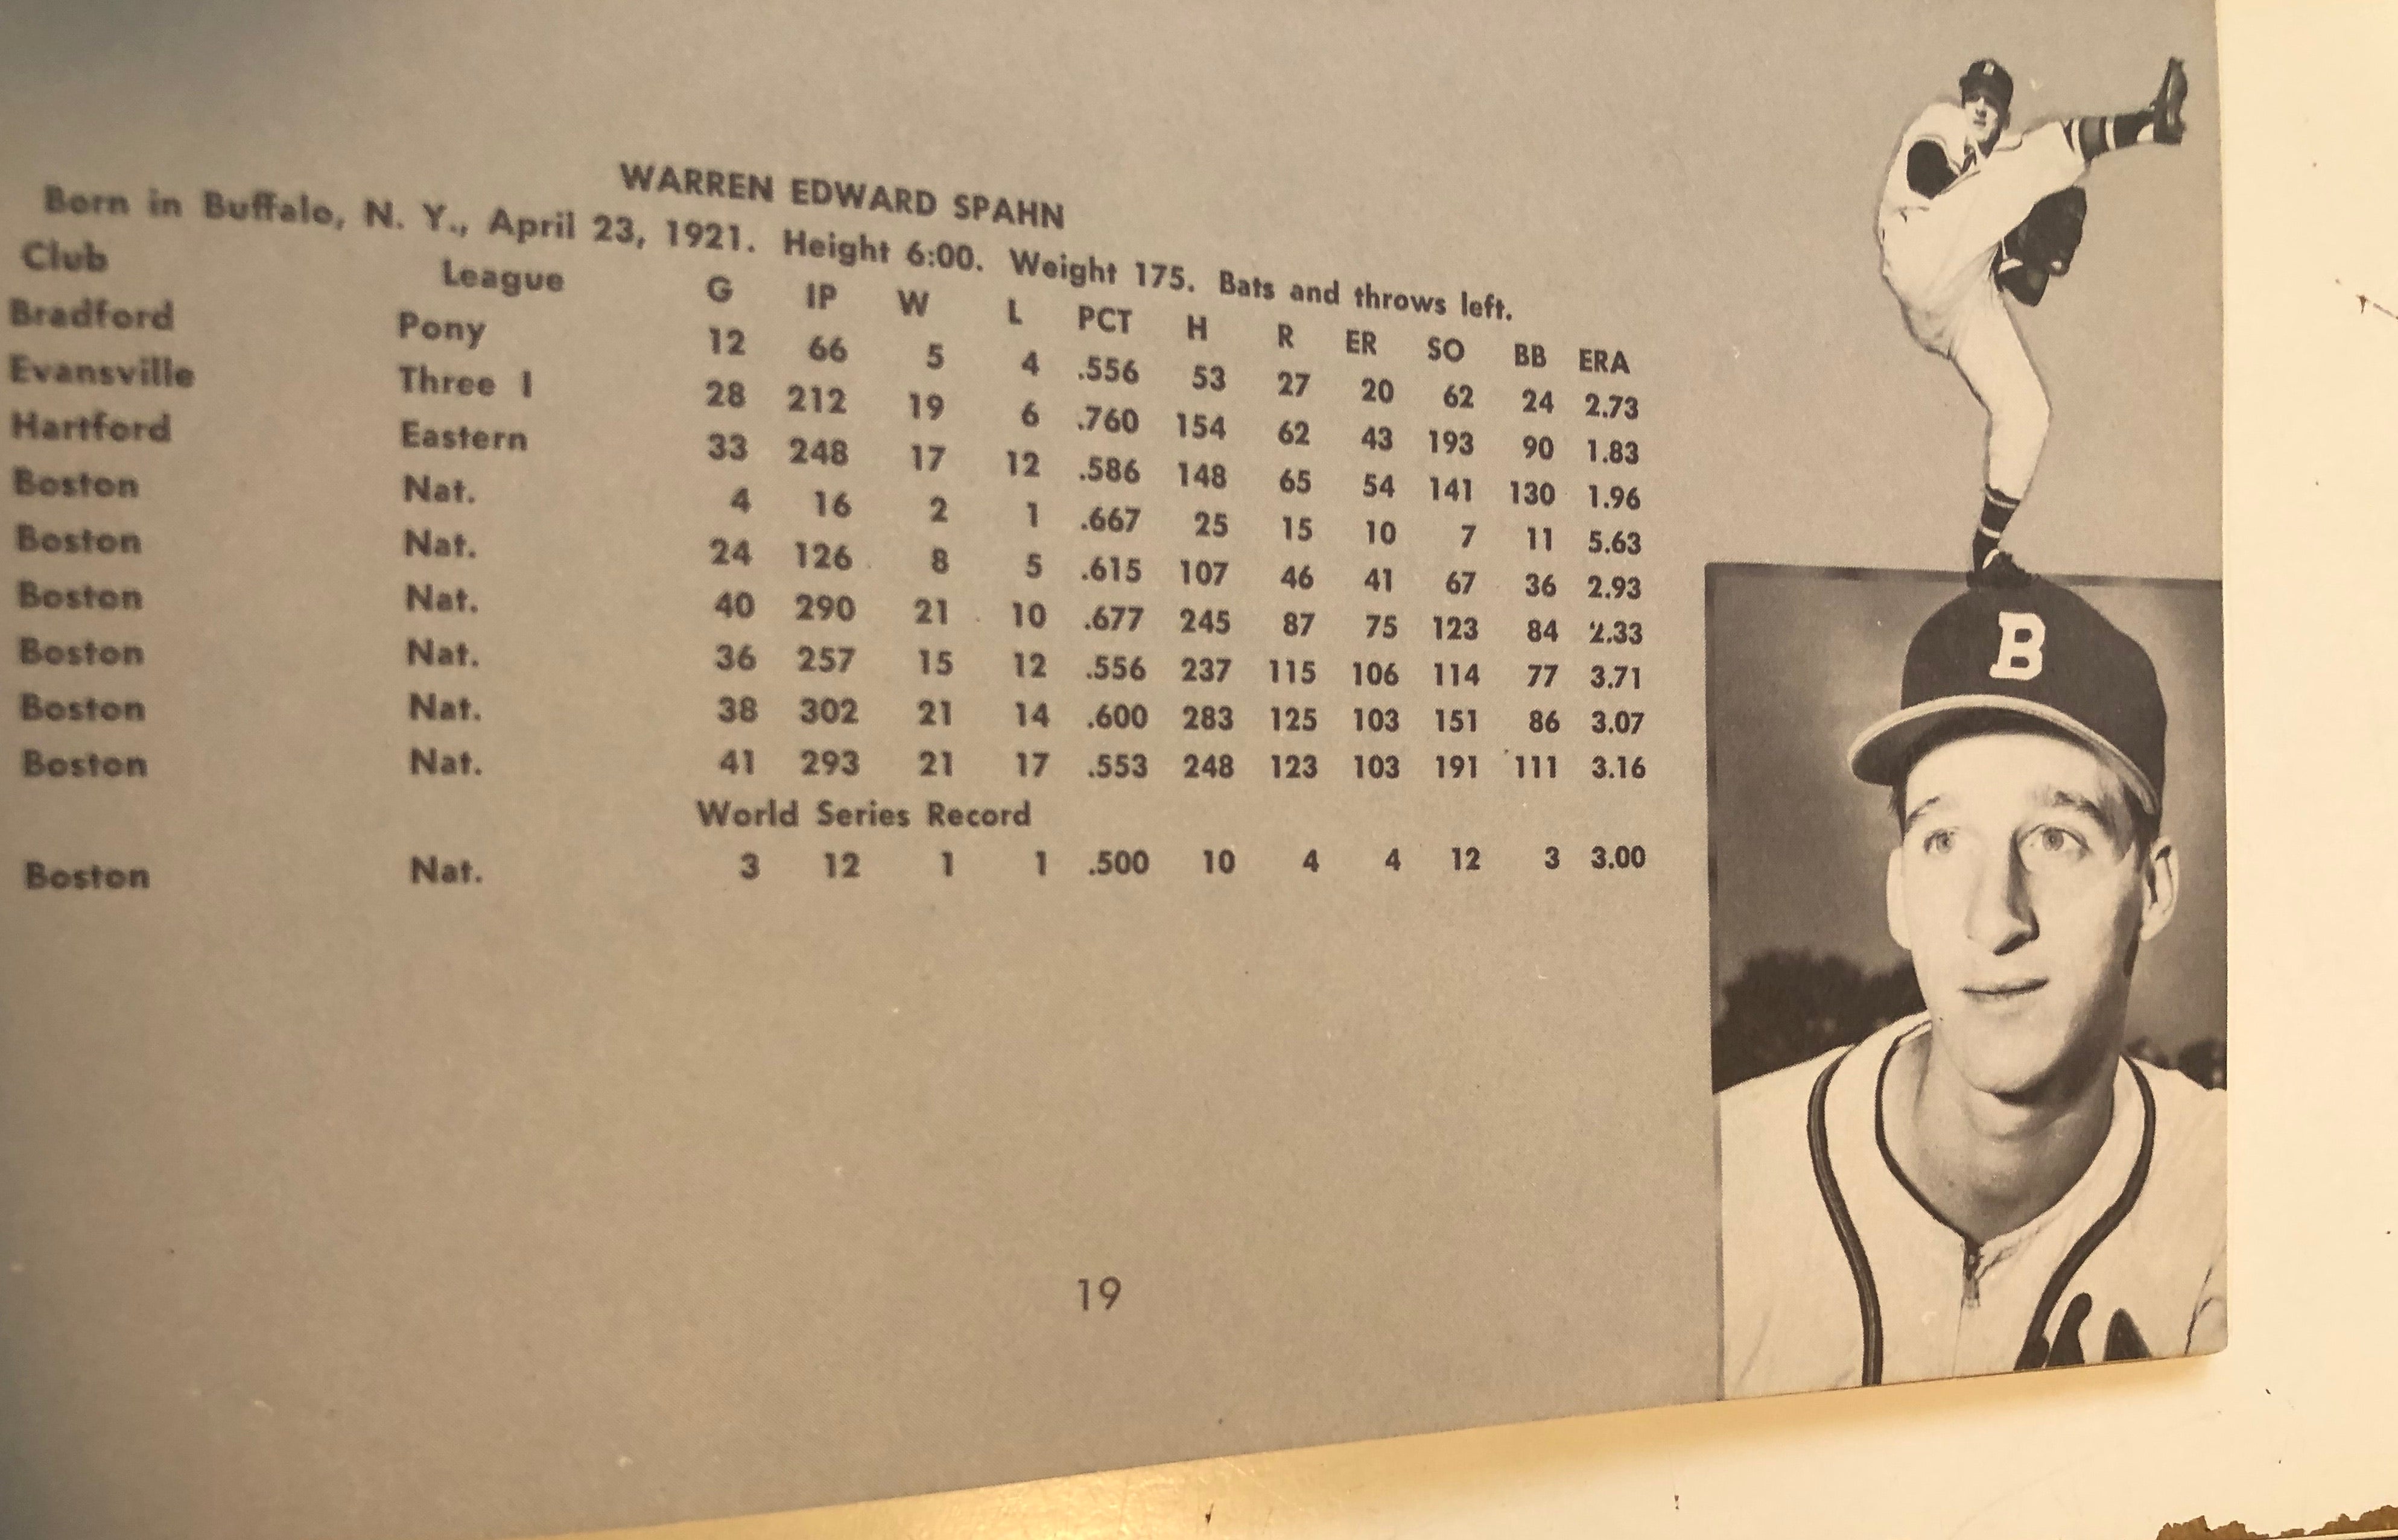 1951 Boston Braves baseball program